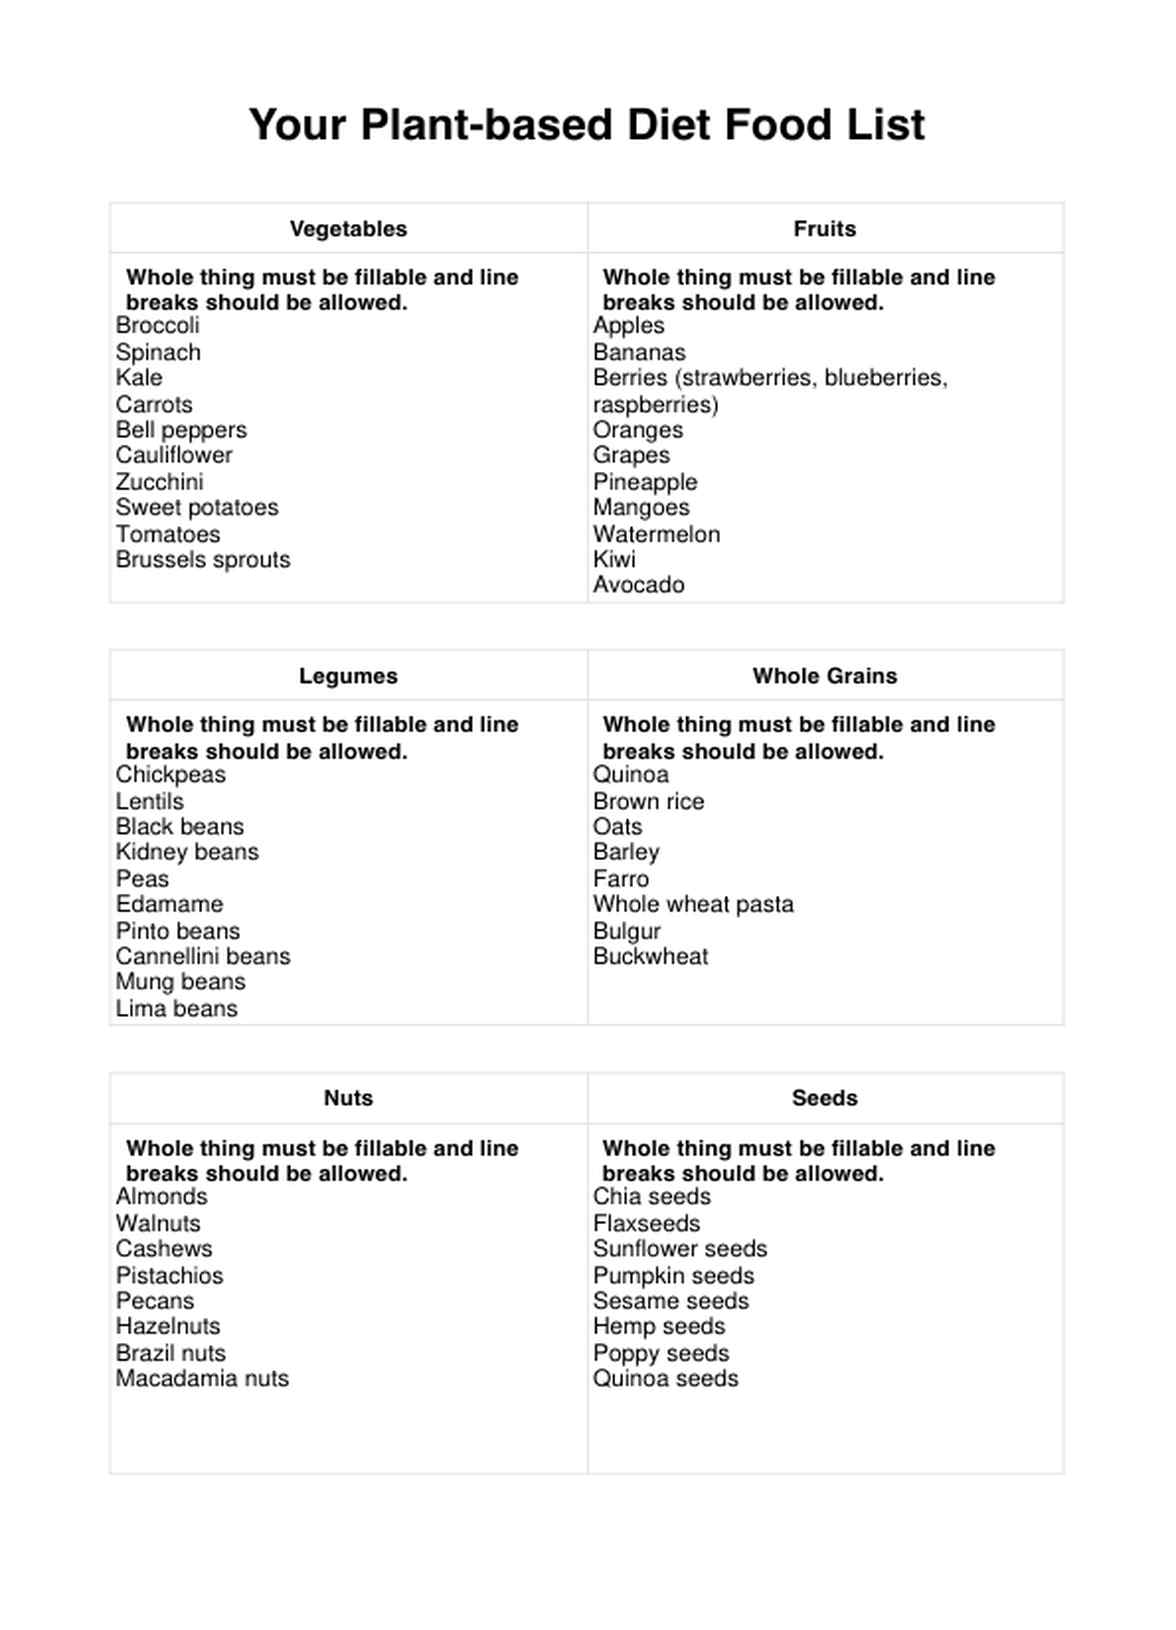 Plant-based Diet Food List PDF Example